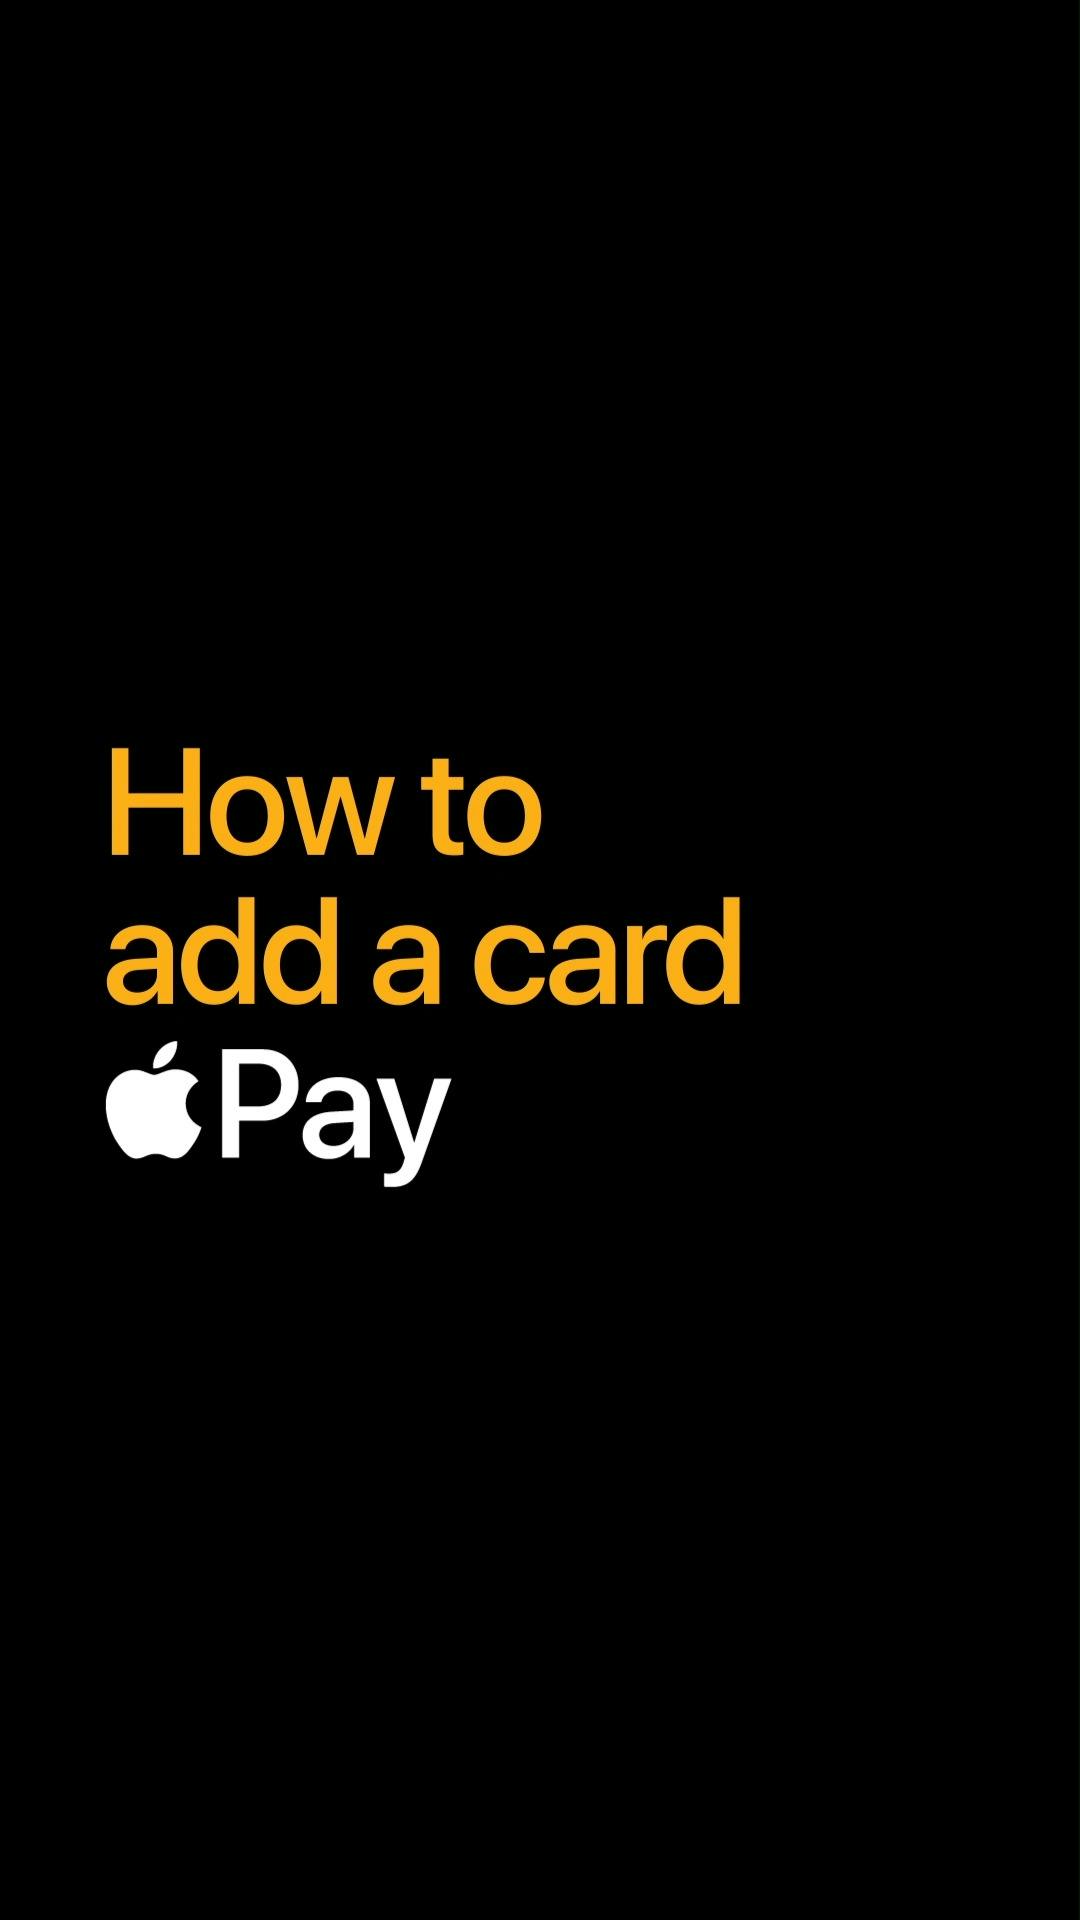 Προσθέστε την κάρτα σας στο Apple Wallet και πληρώστε οπουδήποτε με το iPhone σας